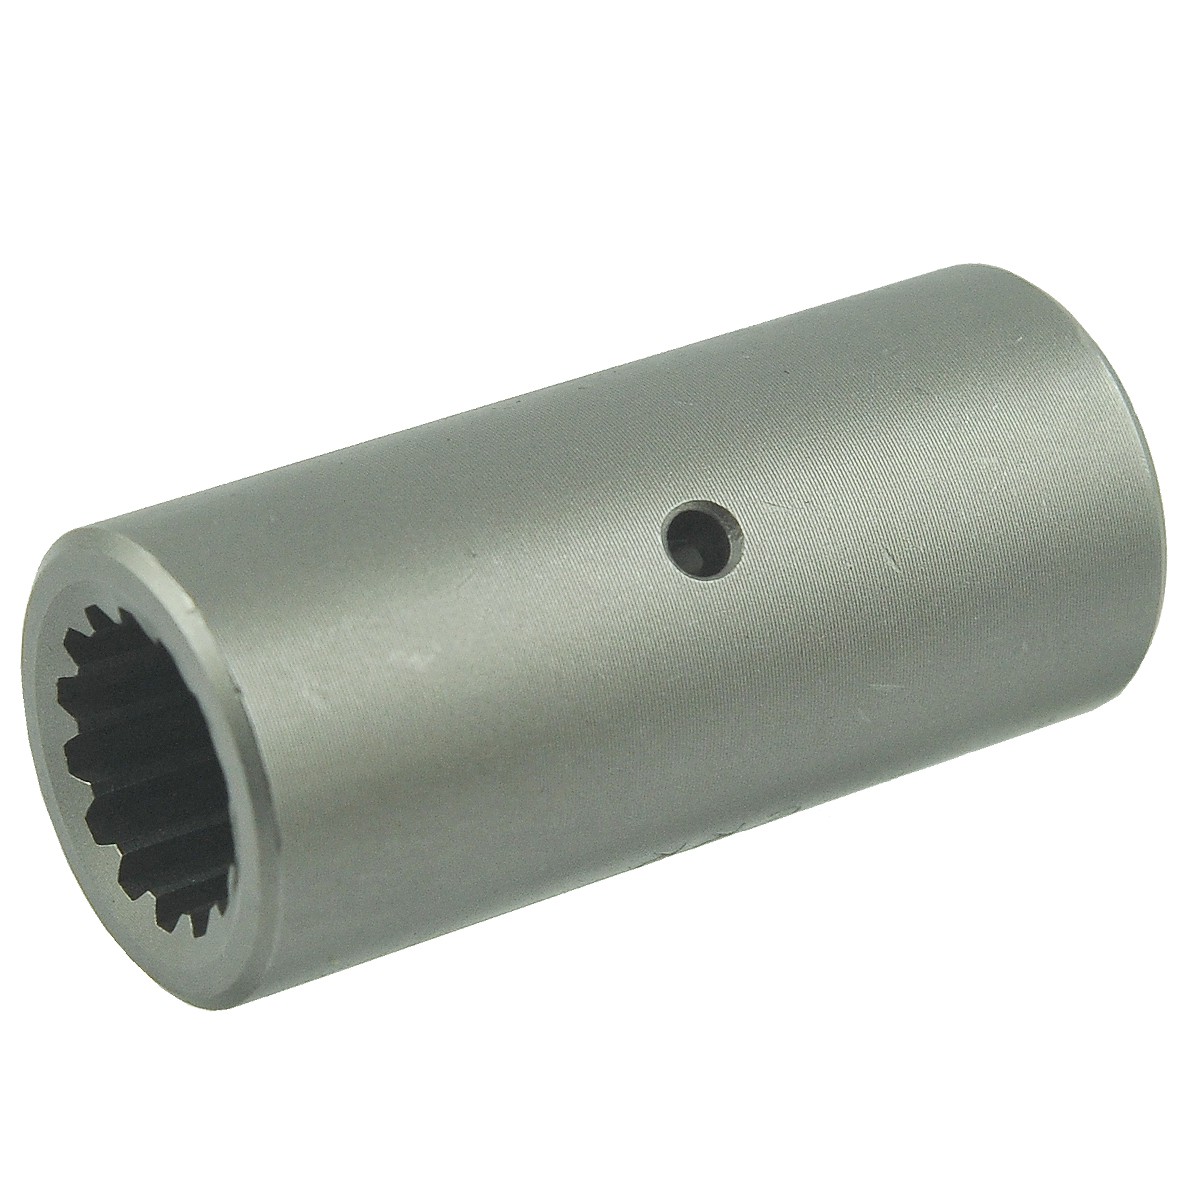 Shaft connector 14T / 65 mm / Kubota L01 / 1353-4452-1 / Τ0070-14710